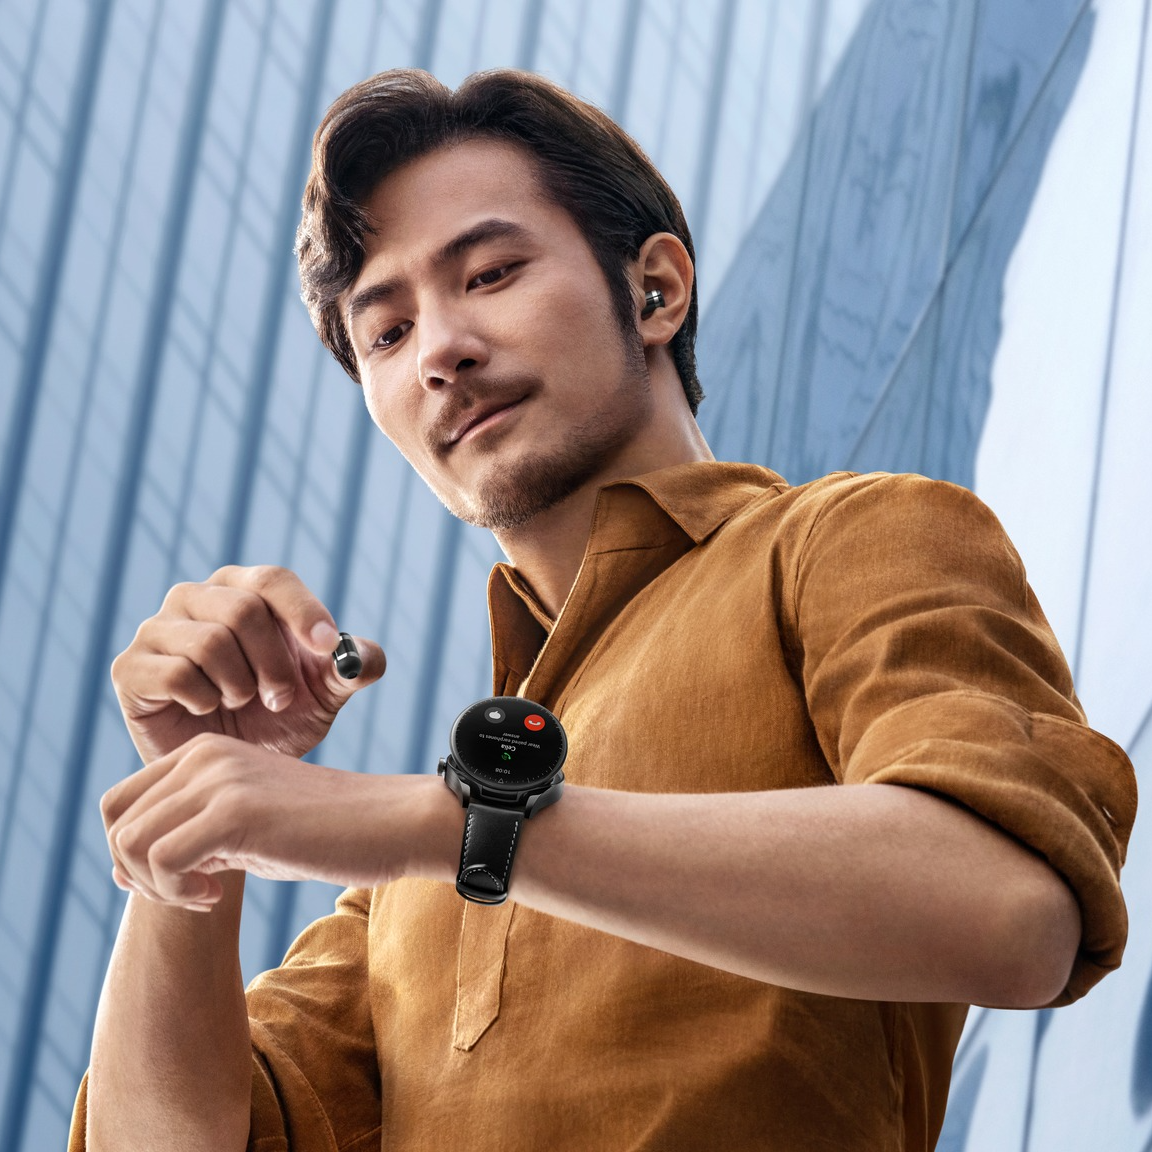 Huawei-Watch-Buds